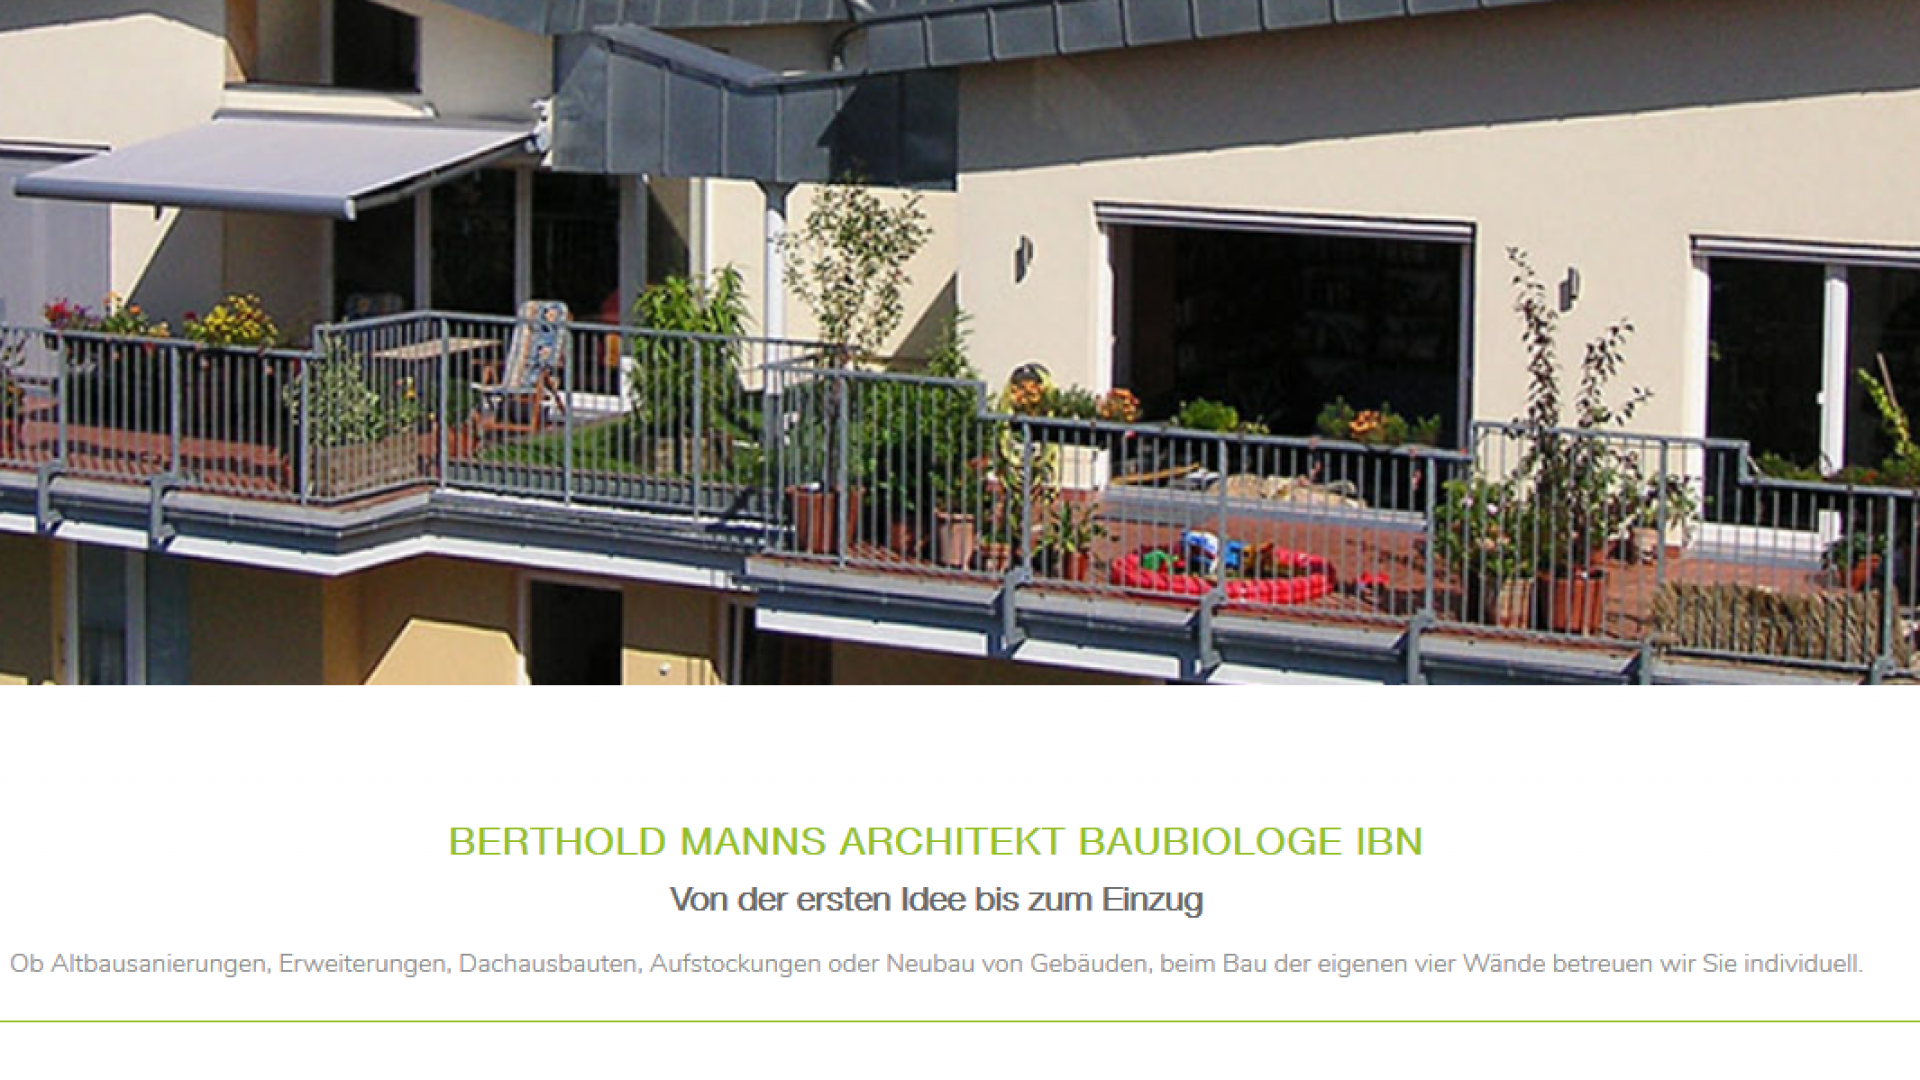 Berthold Manns Architekt Baubiologe IBN